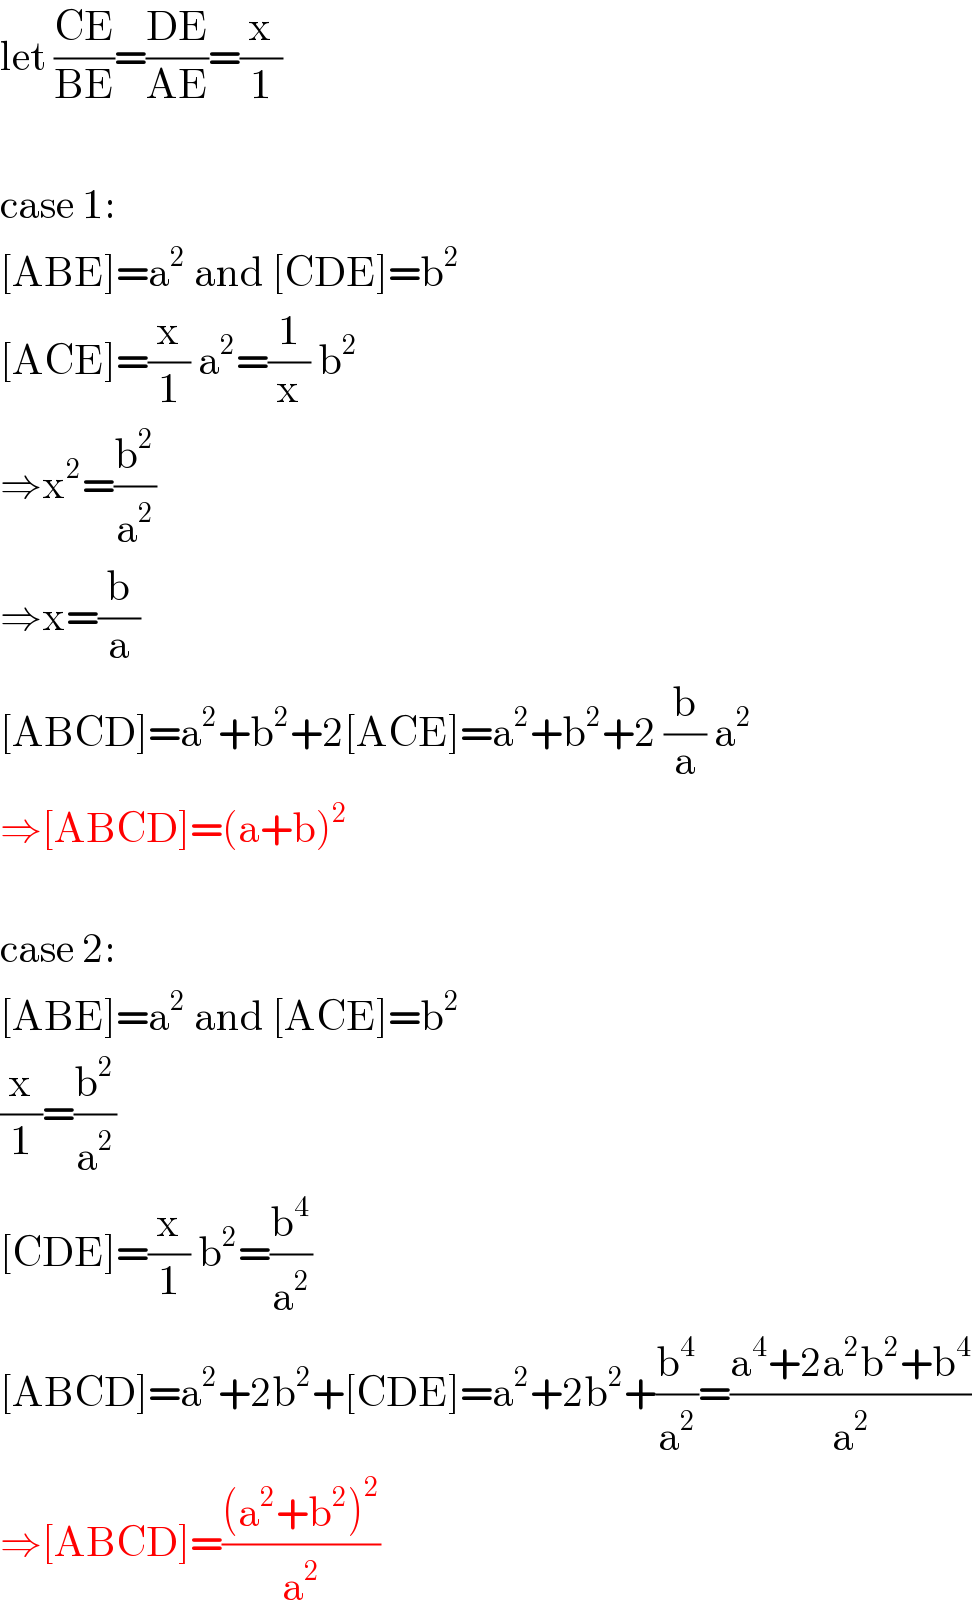 let ((CE)/(BE))=((DE)/(AE))=(x/1)    case 1:  [ABE]=a^2  and [CDE]=b^2   [ACE]=(x/1) a^2 =(1/x) b^2   ⇒x^2 =(b^2 /a^2 )  ⇒x=(b/a)  [ABCD]=a^2 +b^2 +2[ACE]=a^2 +b^2 +2 (b/a) a^2   ⇒[ABCD]=(a+b)^2     case 2:  [ABE]=a^2  and [ACE]=b^2   (x/1)=(b^2 /a^2 )  [CDE]=(x/1) b^2 =(b^4 /a^2 )  [ABCD]=a^2 +2b^2 +[CDE]=a^2 +2b^2 +(b^4 /a^2 )=((a^4 +2a^2 b^2 +b^4 )/a^2 )  ⇒[ABCD]=(((a^2 +b^2 )^2 )/a^2 )  